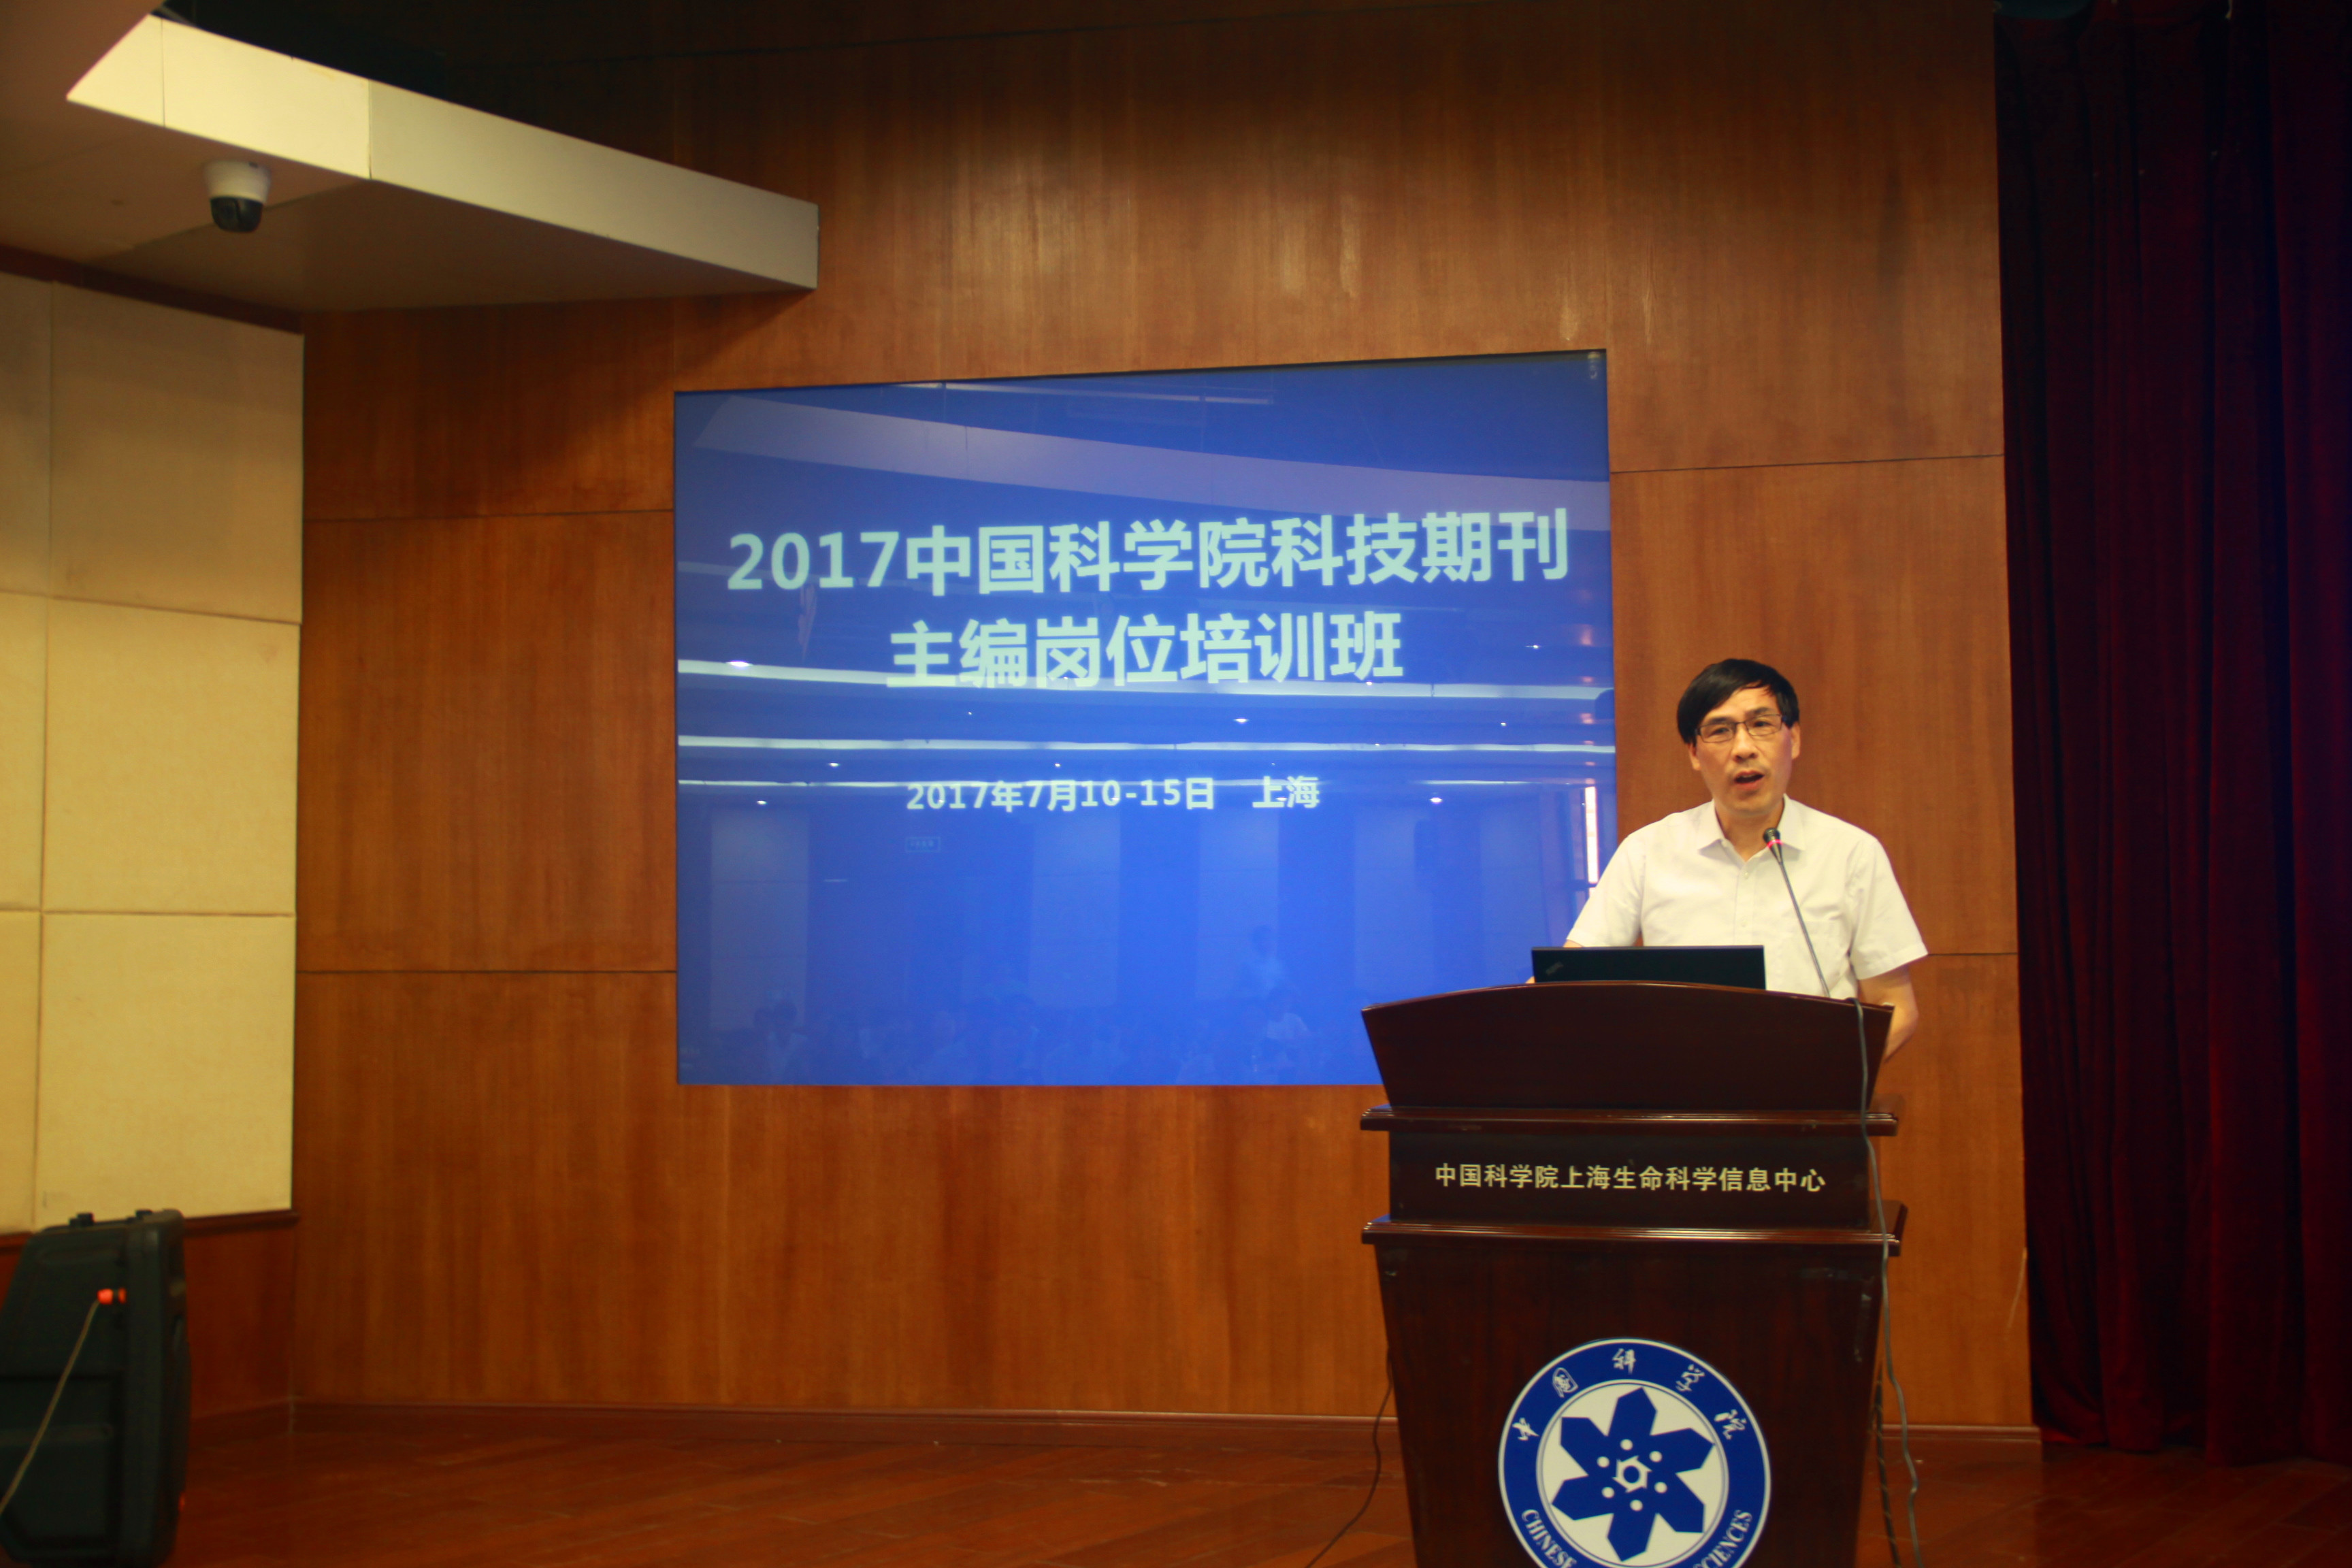 中国科学院上海生命科学研究院党委书记汤伯伟为致辞